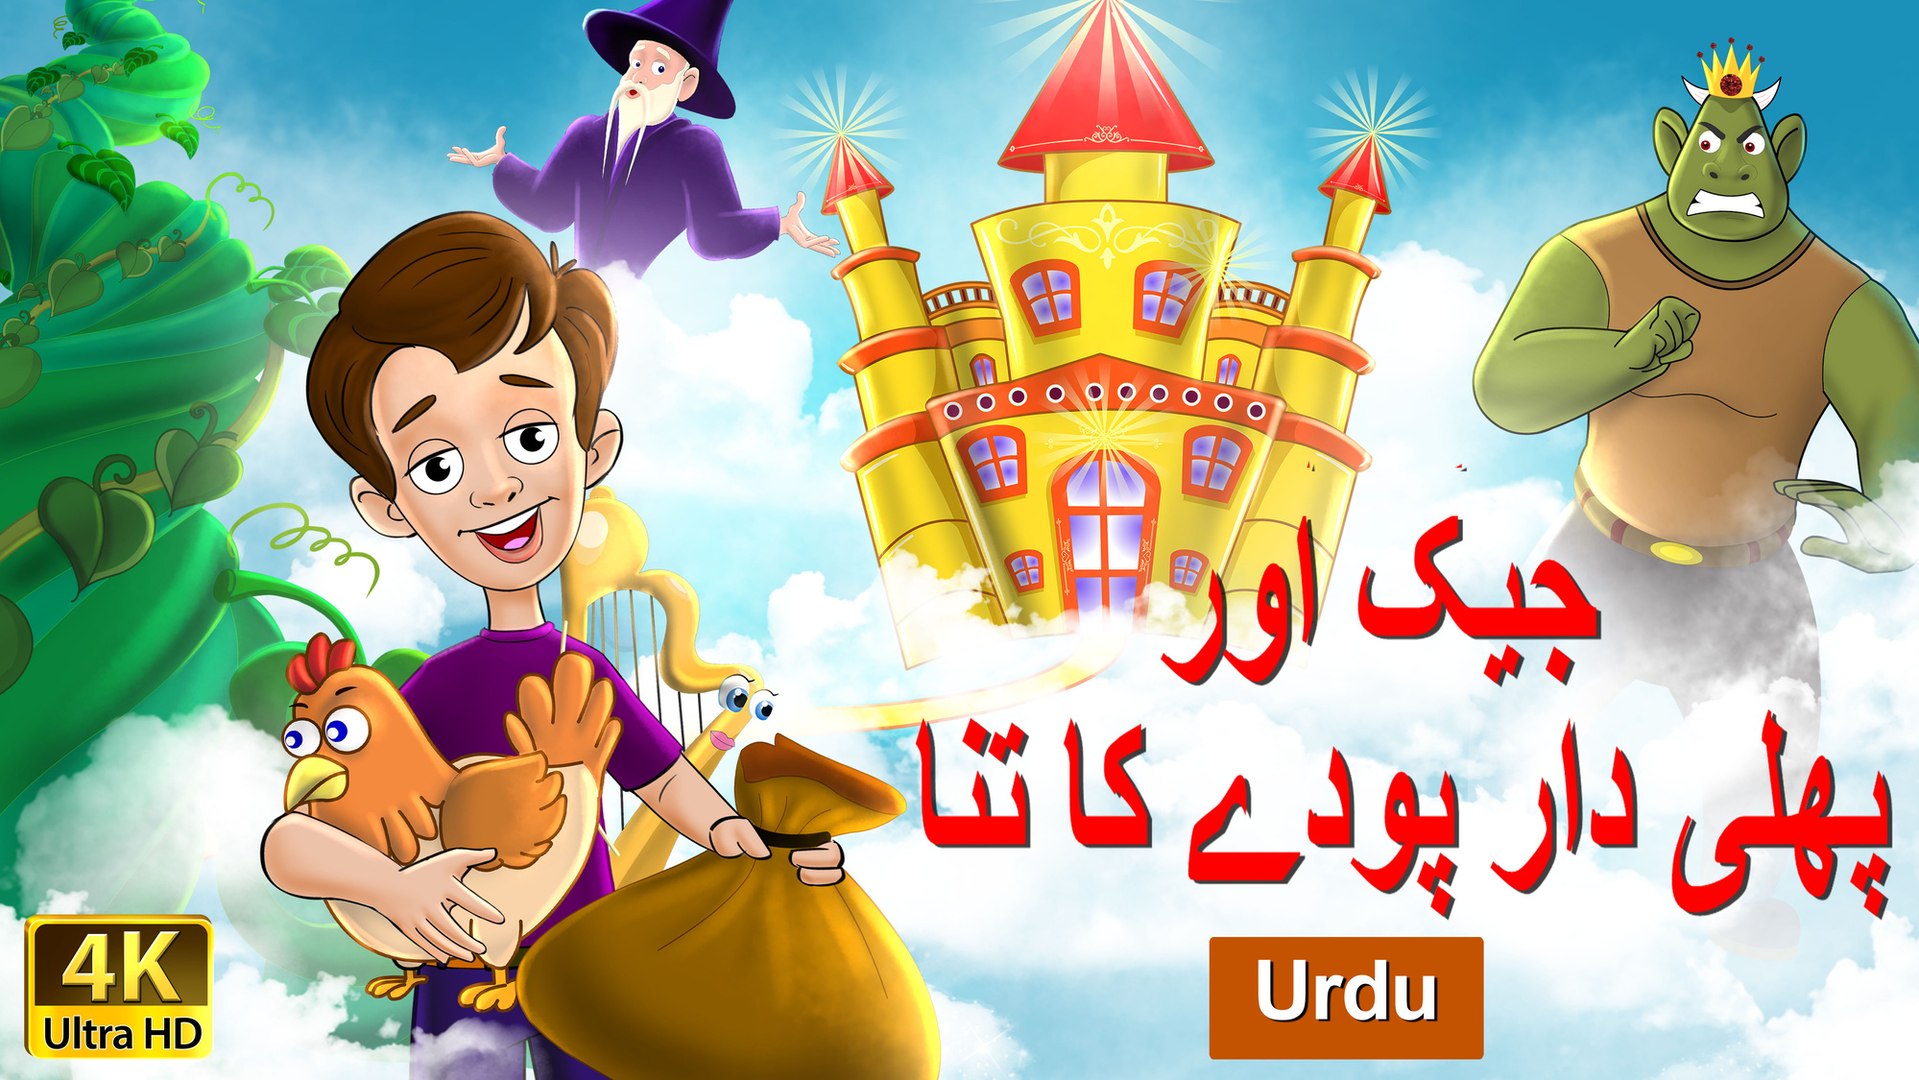 Jack and Beanstalk in Urdu - 4K UHD - Urdu Fairy Tales - video Dailymotion